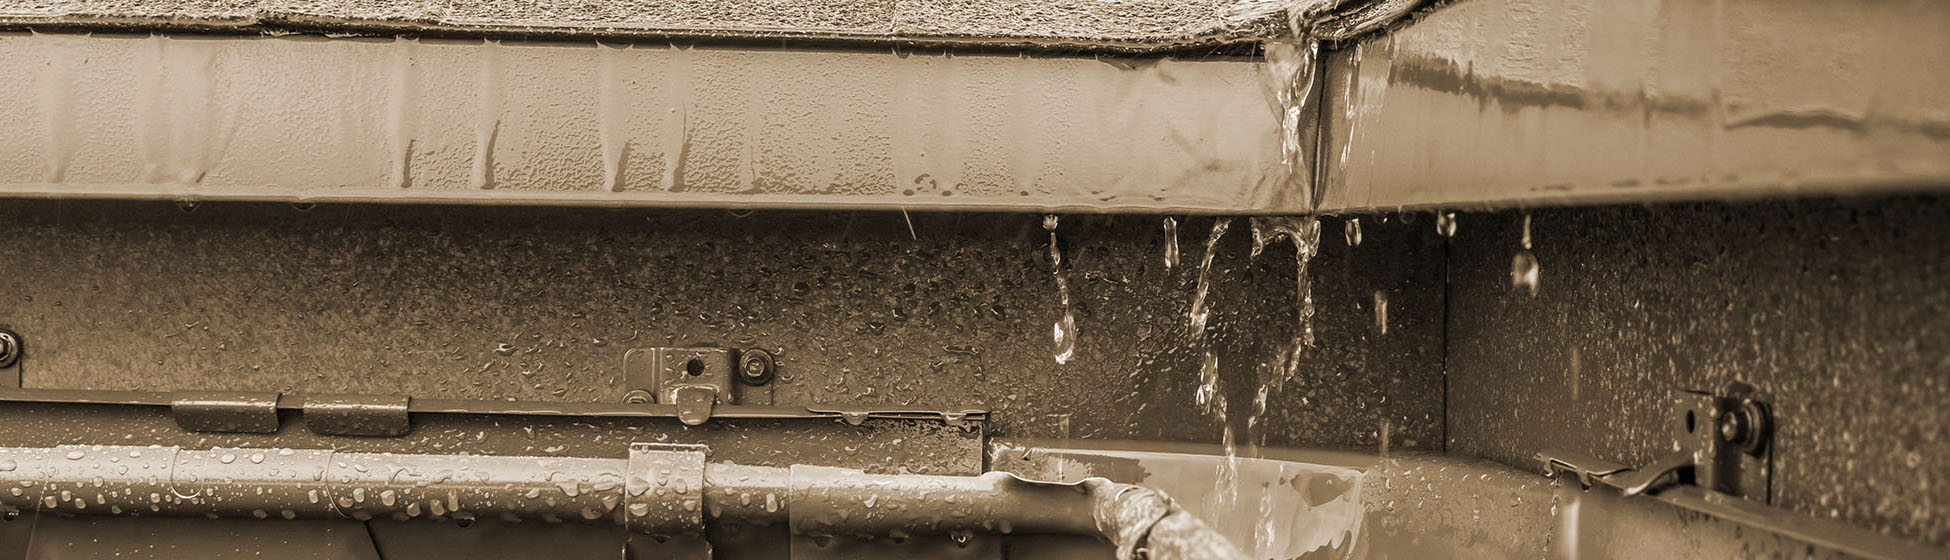 Installer un recuperateur d eau de pluie gouttiere rectangulaire